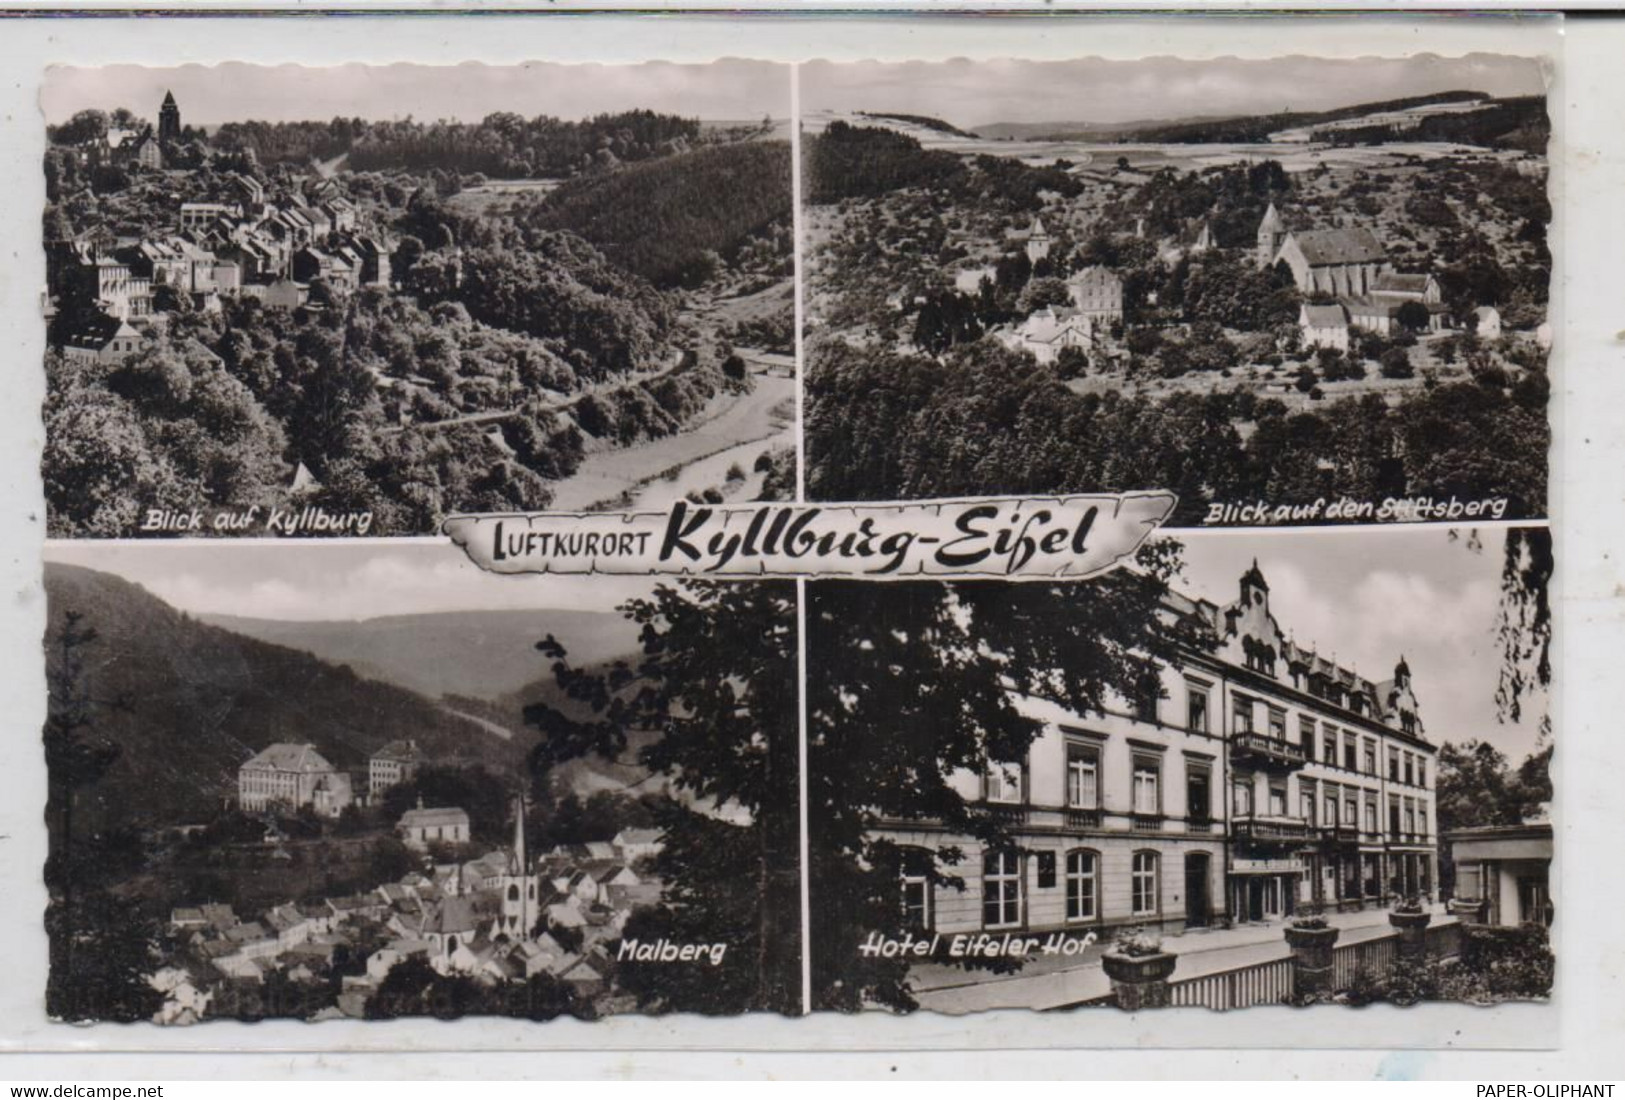 5524 KYLLBURG, Hotel Eifeler Hof, Malberg, Stiftsberg...1957 - Bitburg